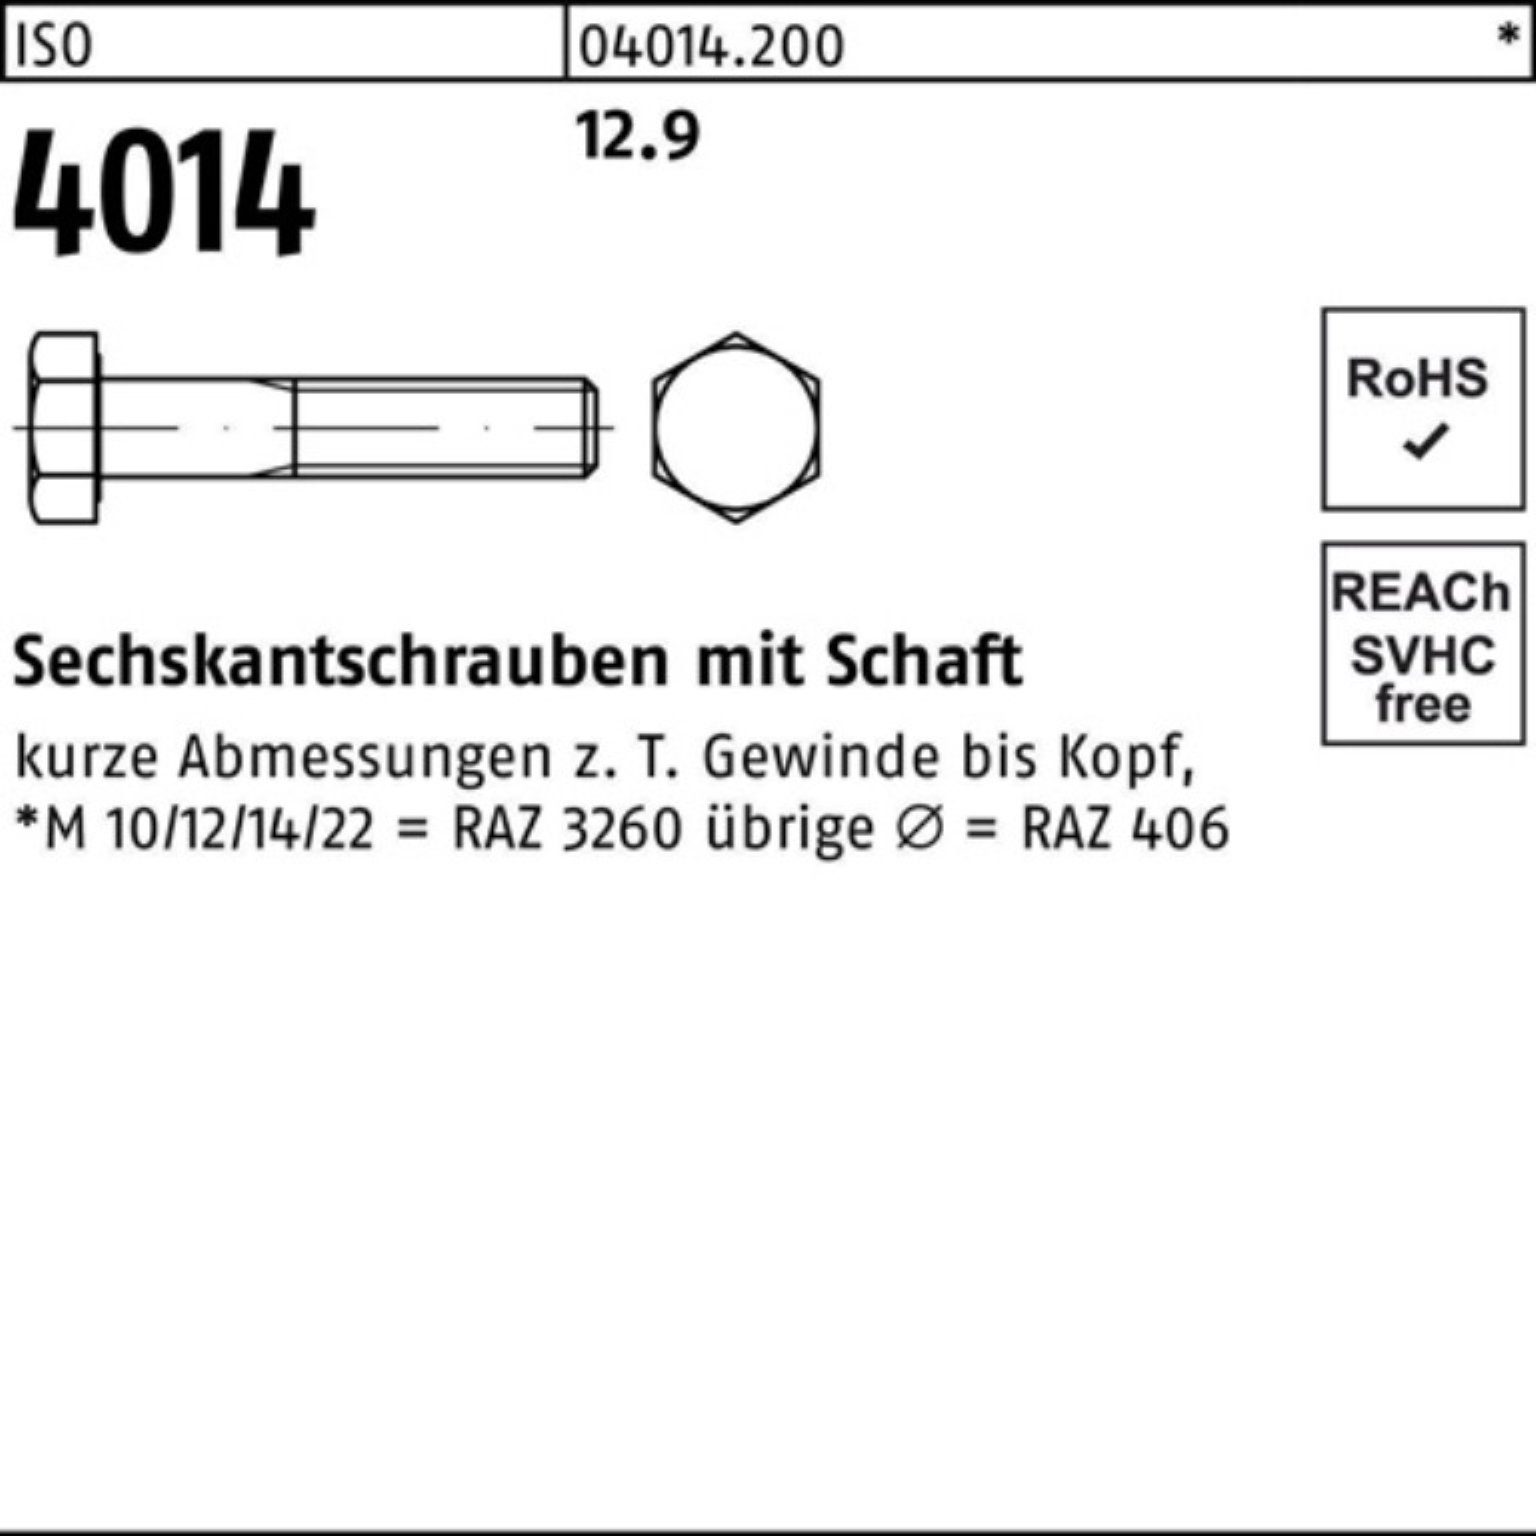 IS Pack 110 Sechskantschraube 100er 4014 Schaft M30x Bufab Stück Sechskantschraube 5 12.9 ISO